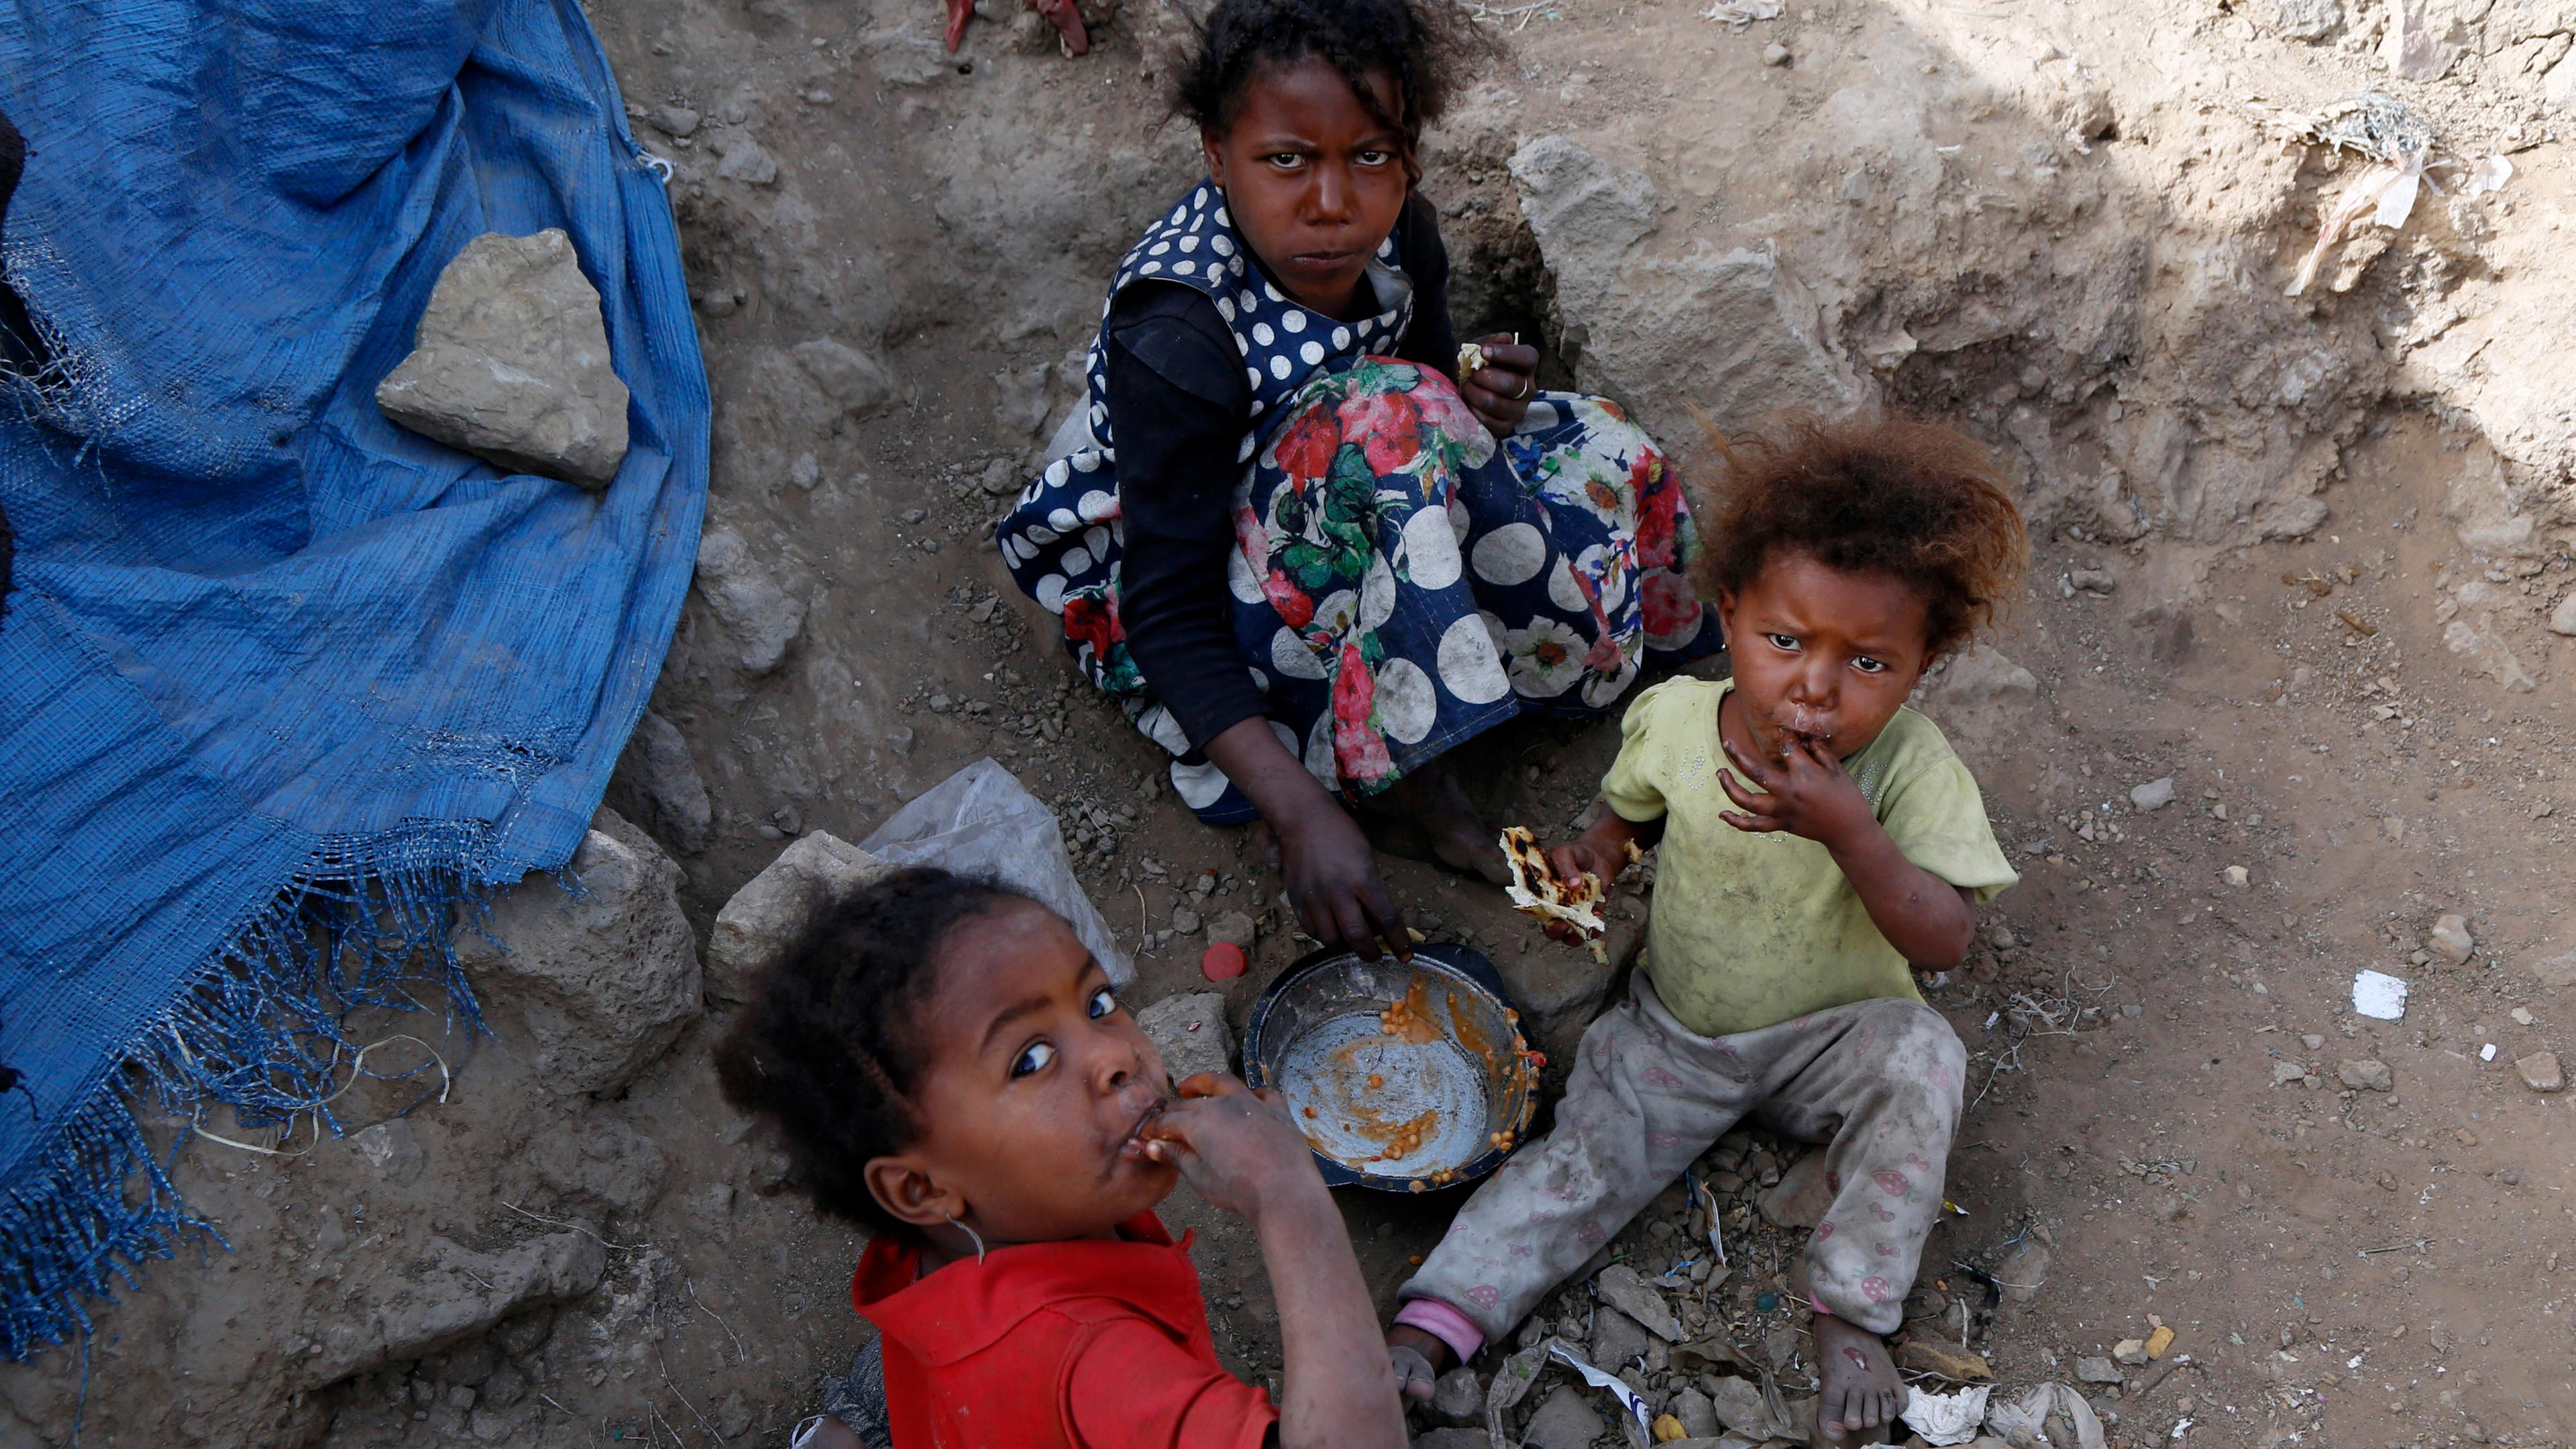 Jemenitische Kinder essen im Al-Azraqin-Flüchtlingslager, aufgenommen am 22.07.2019